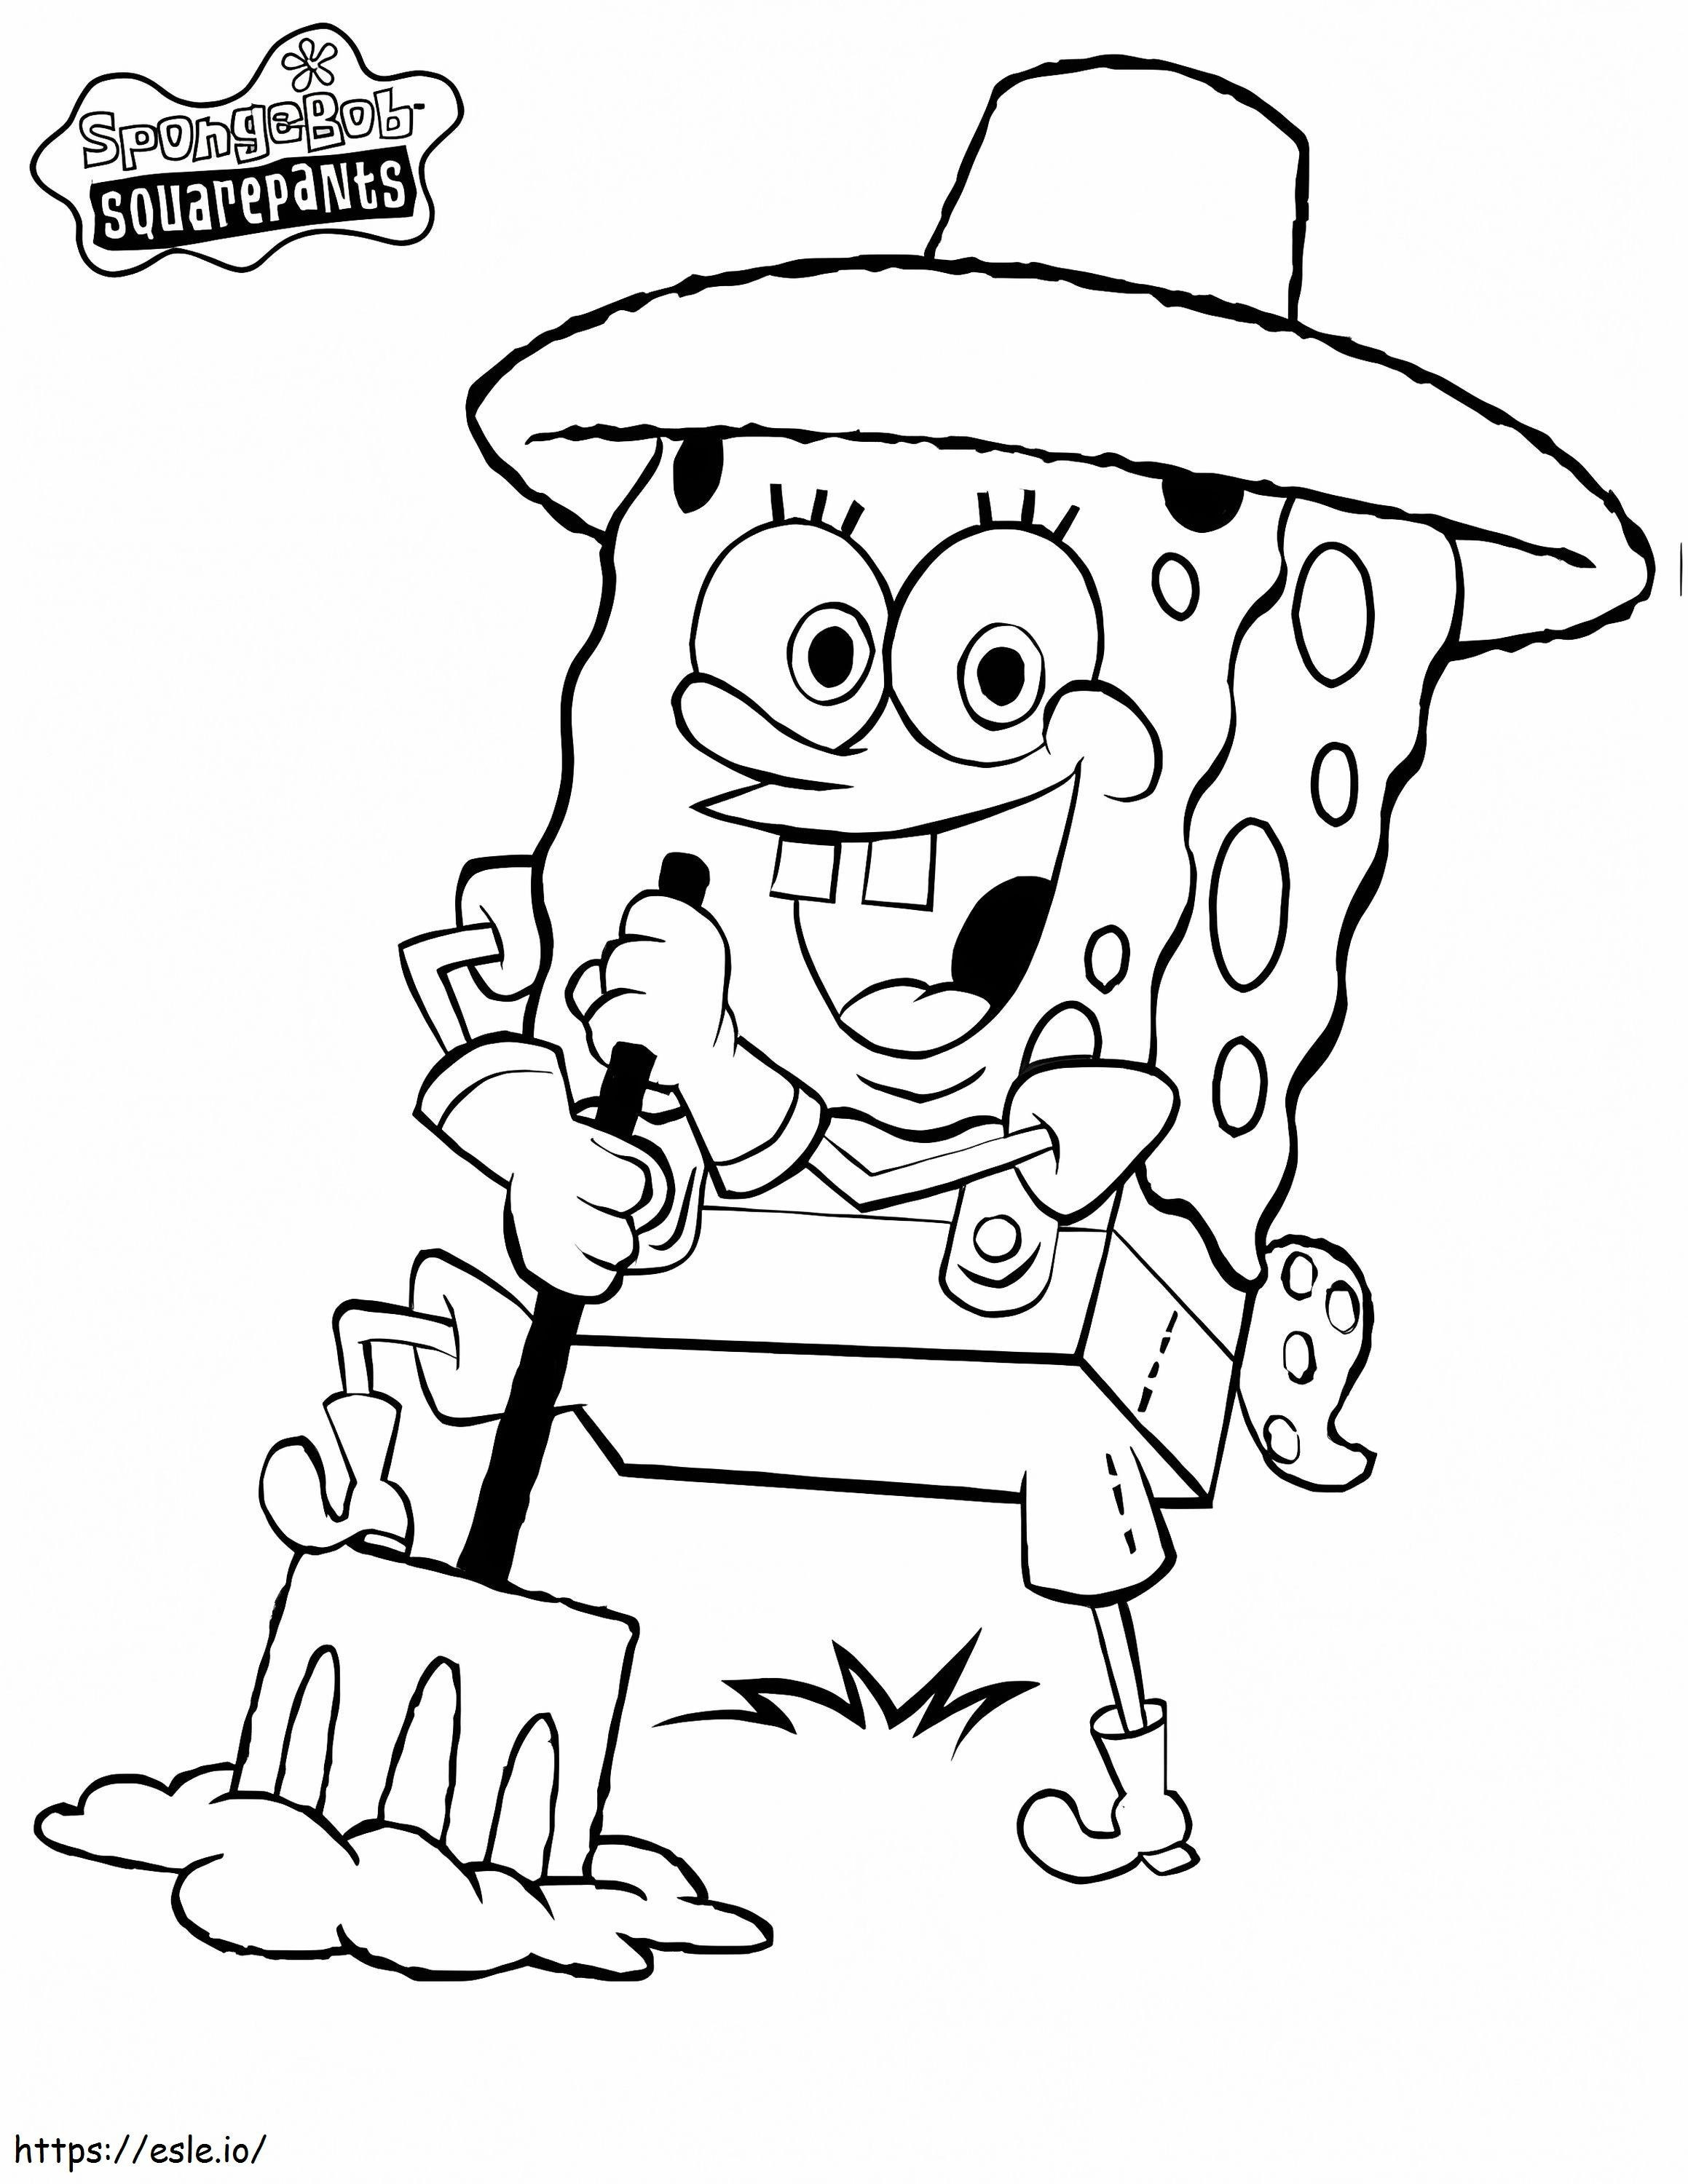 Il contadino Spongebob da colorare